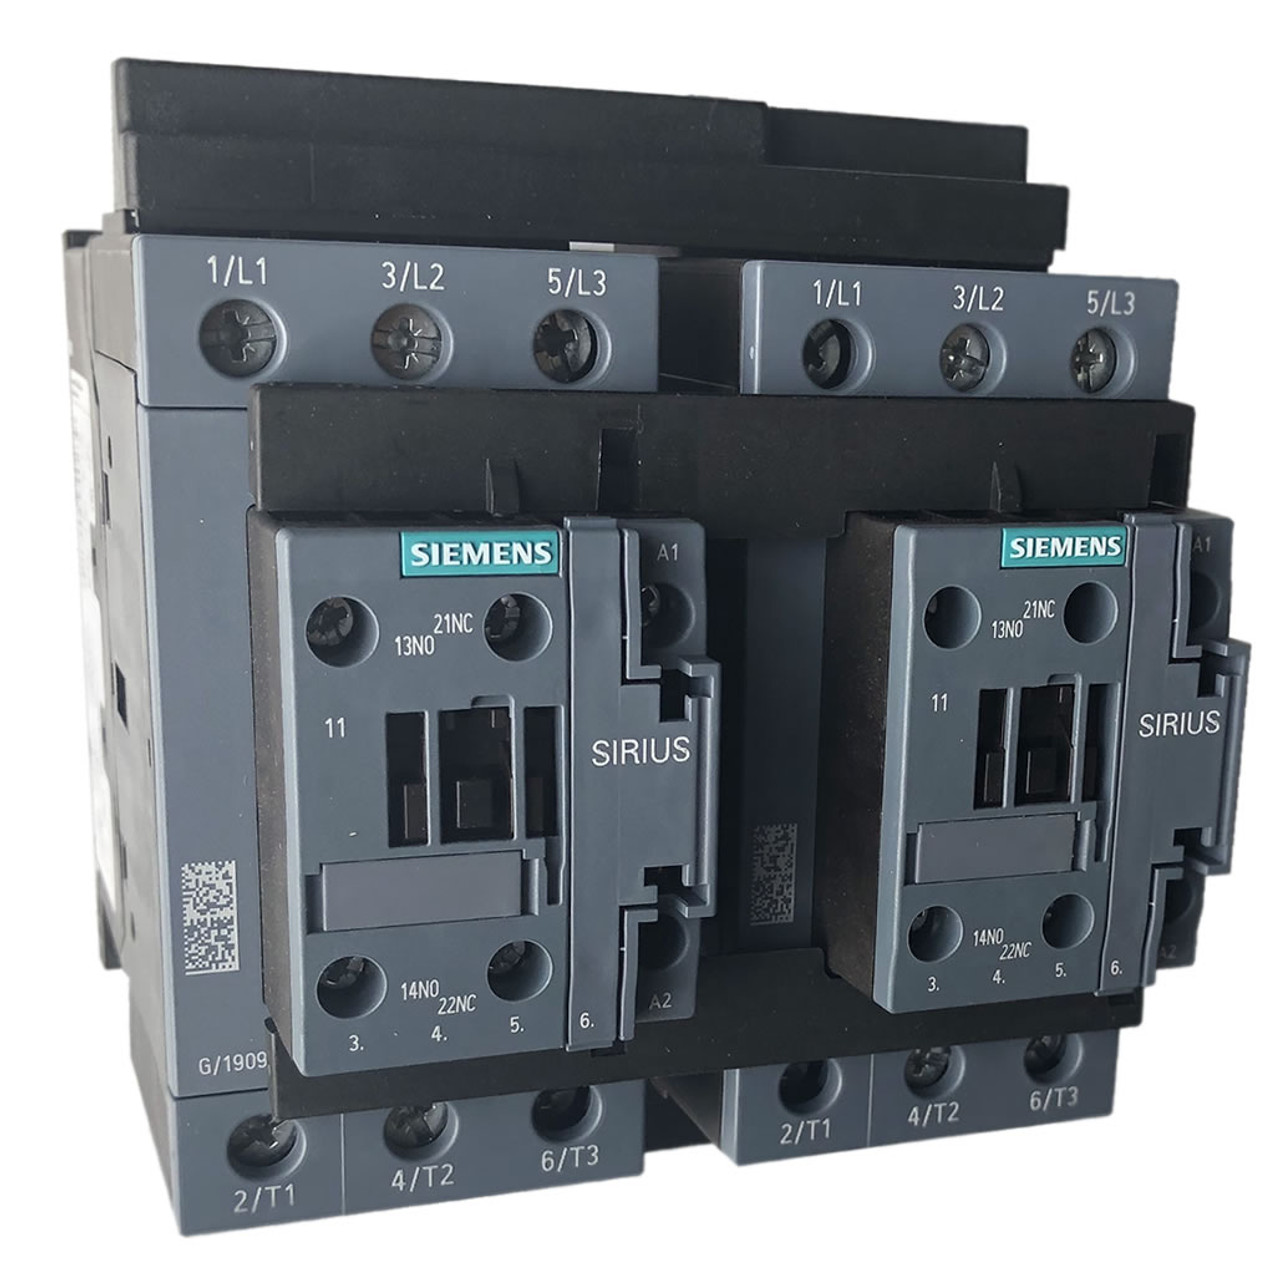 Siemens 3RA2336-8XB30-1AN6 reversing contactor